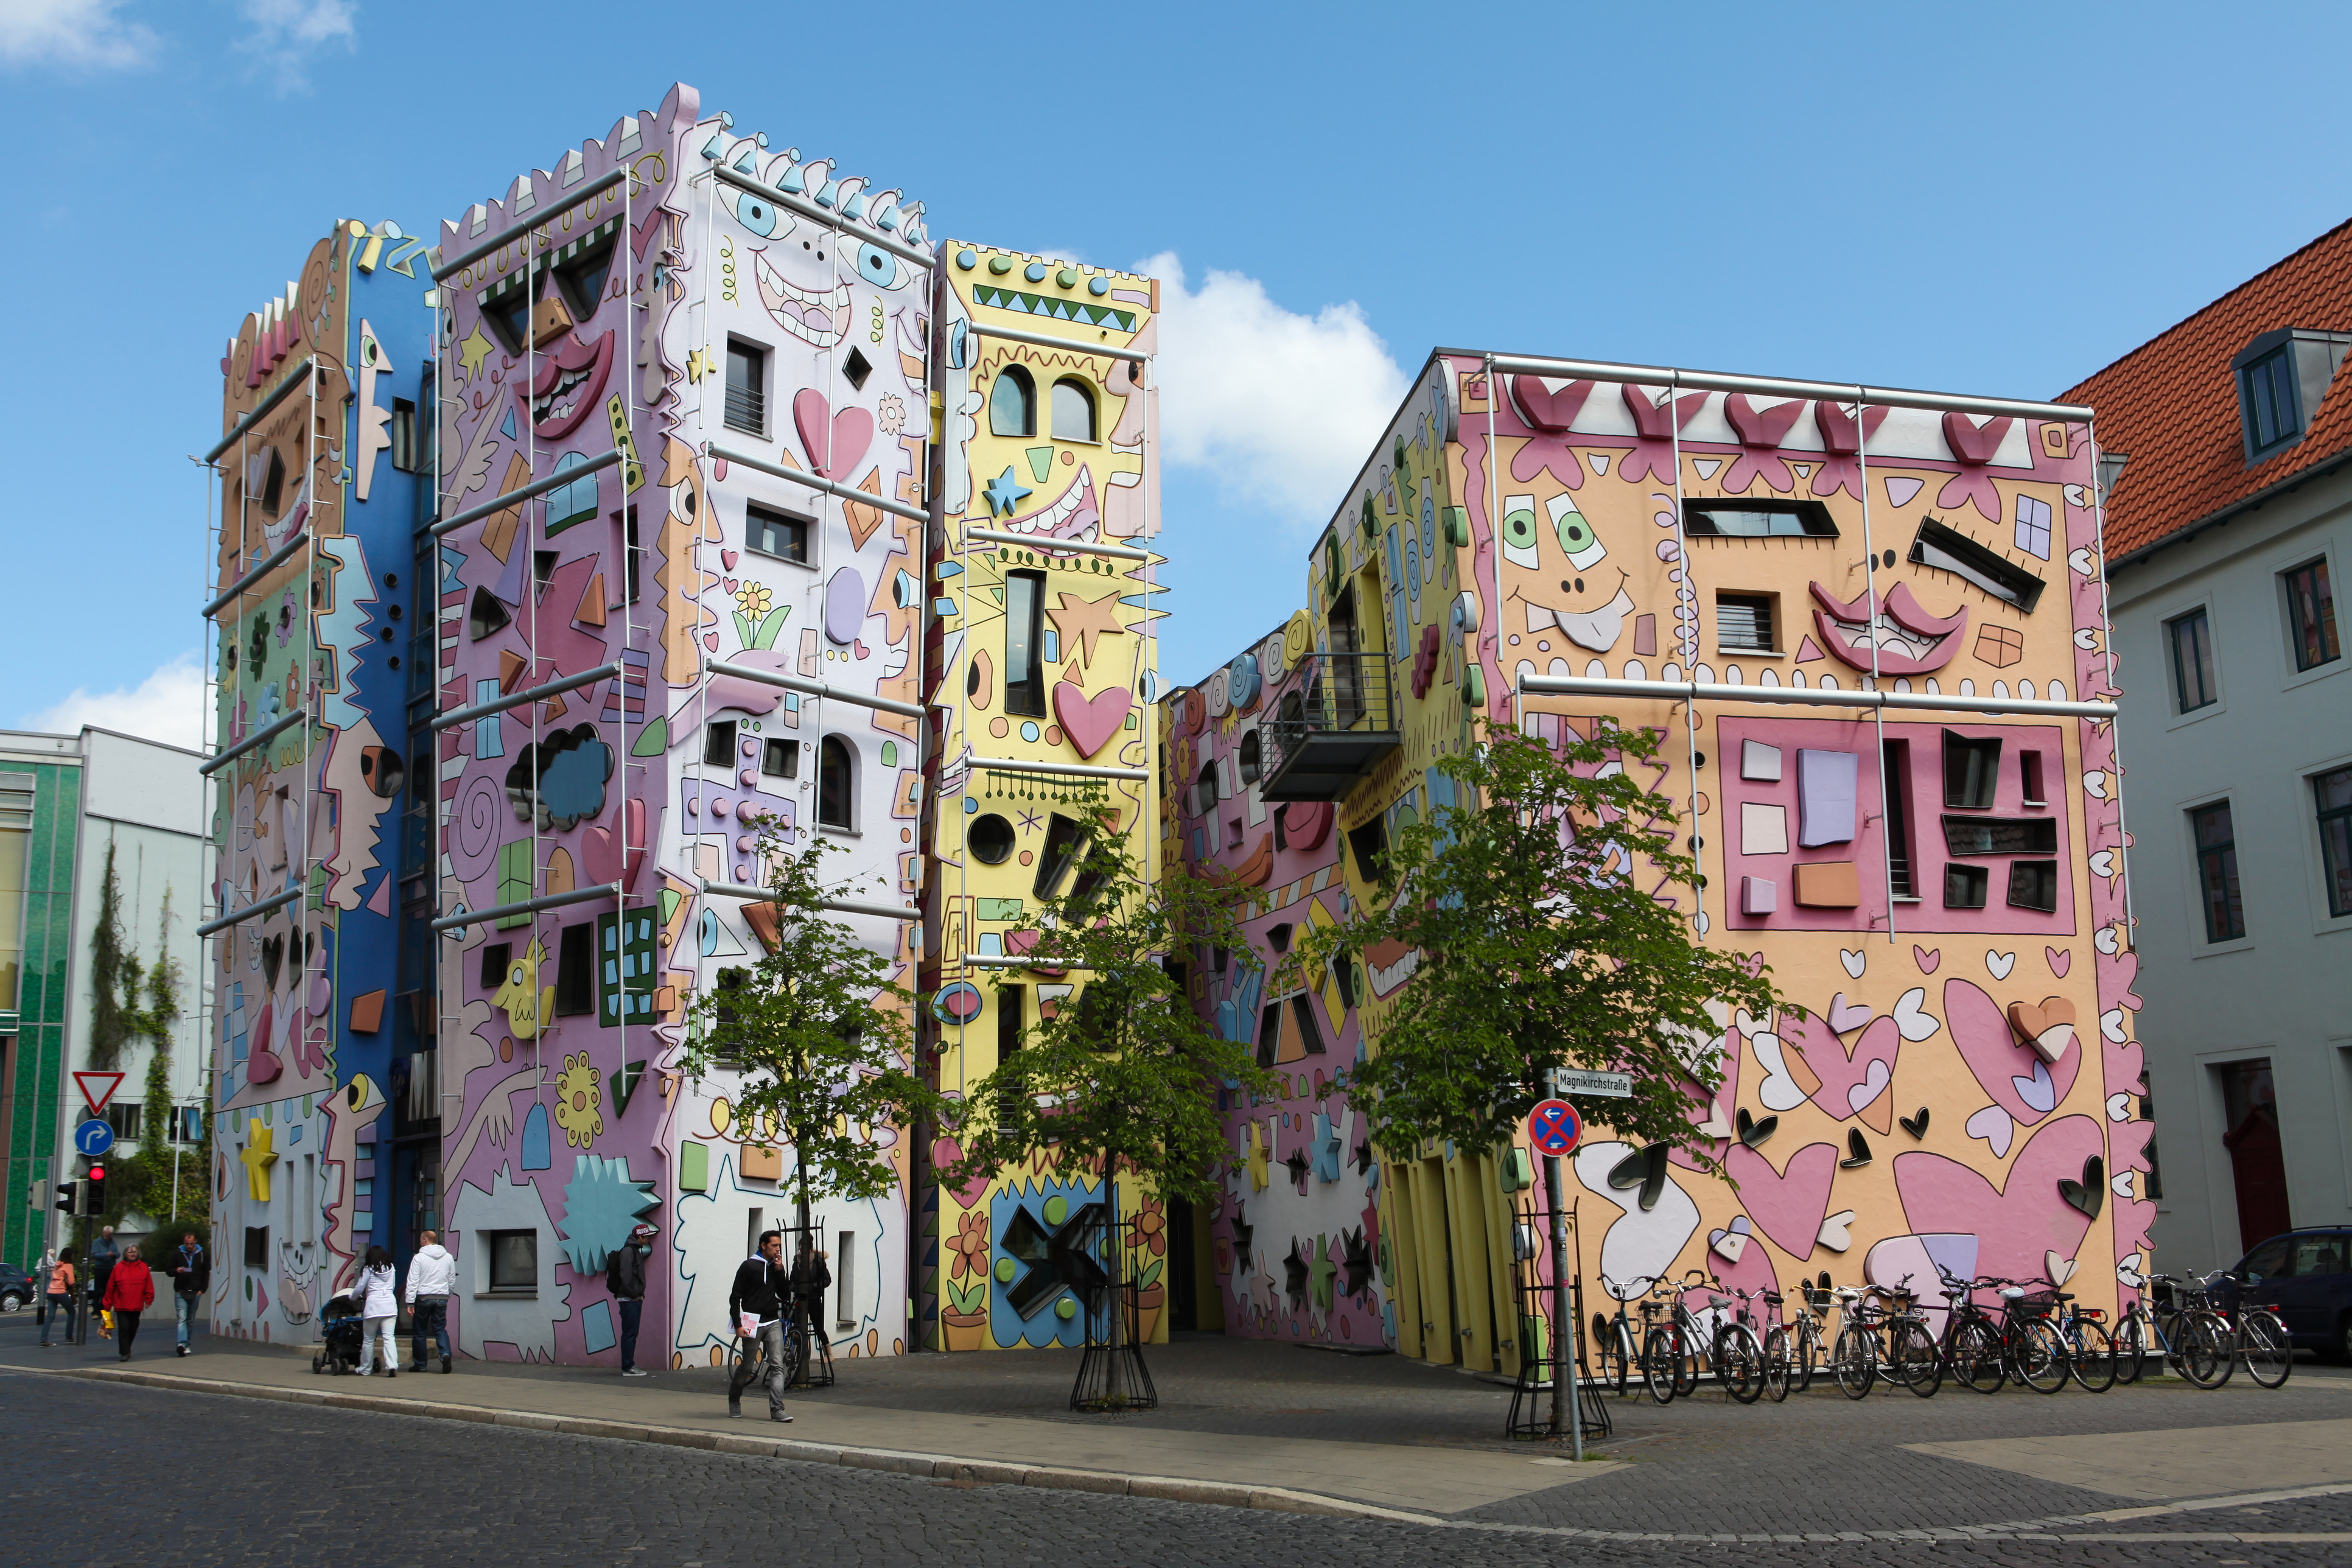 <p>Брауншвайг, Германия</p>

<p>Тази къща, изрисувана от американски художник, противопоставя възгледите на жителите на немското градче. Въпреки това тя със сигурност внася цветно настроение.</p>